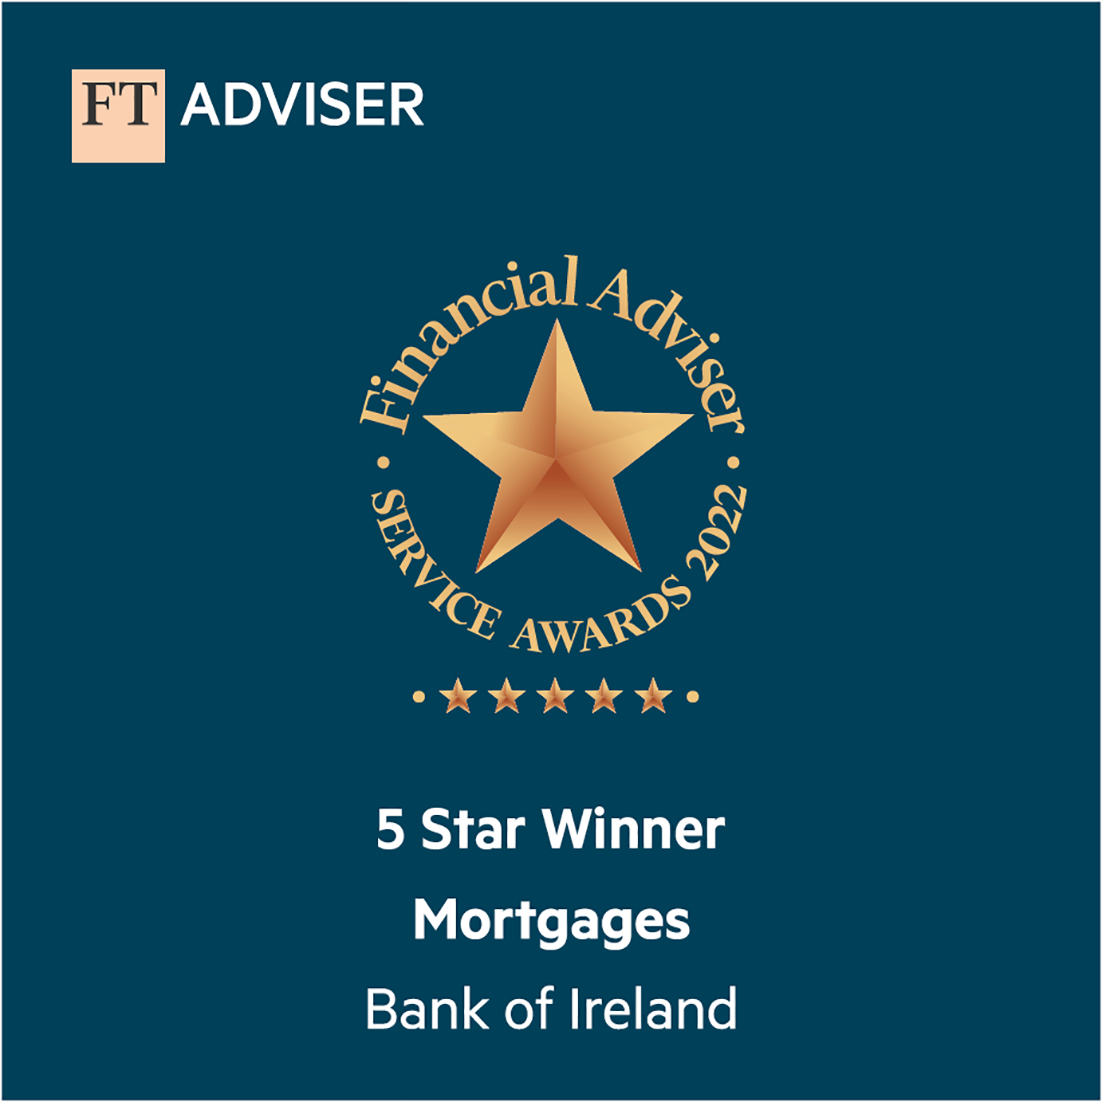 FT Advisor award certificate - 5 Star Winner Mortgages